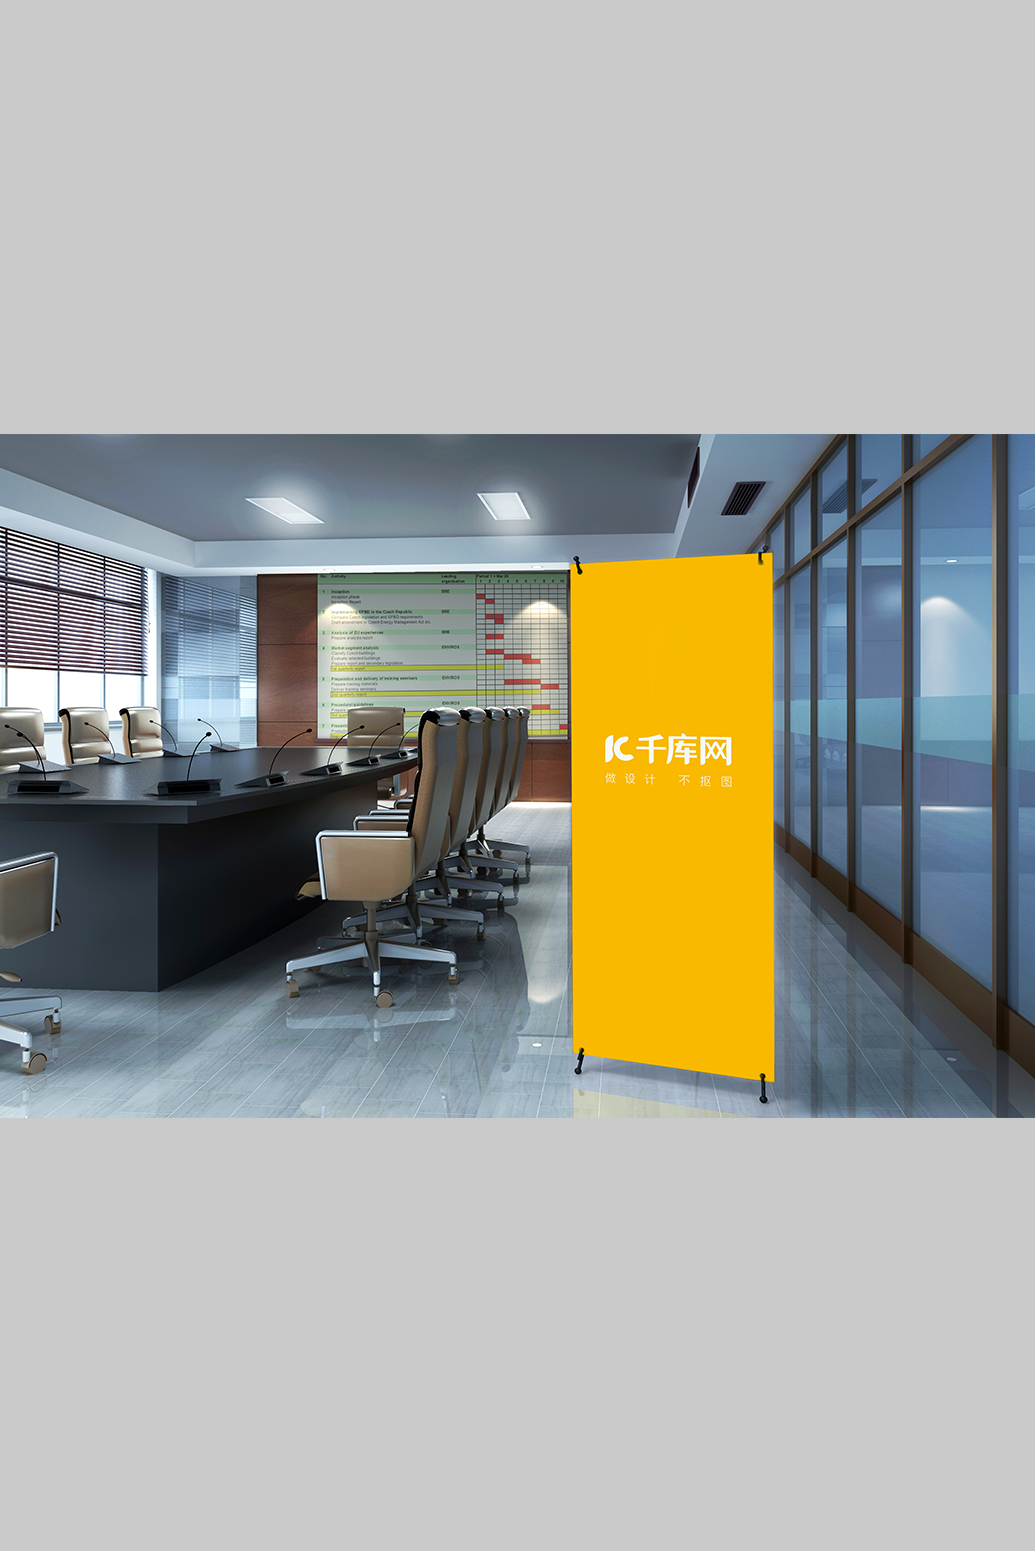 会议室内展架易拉宝设计模板黄色创意大气风格样机图片